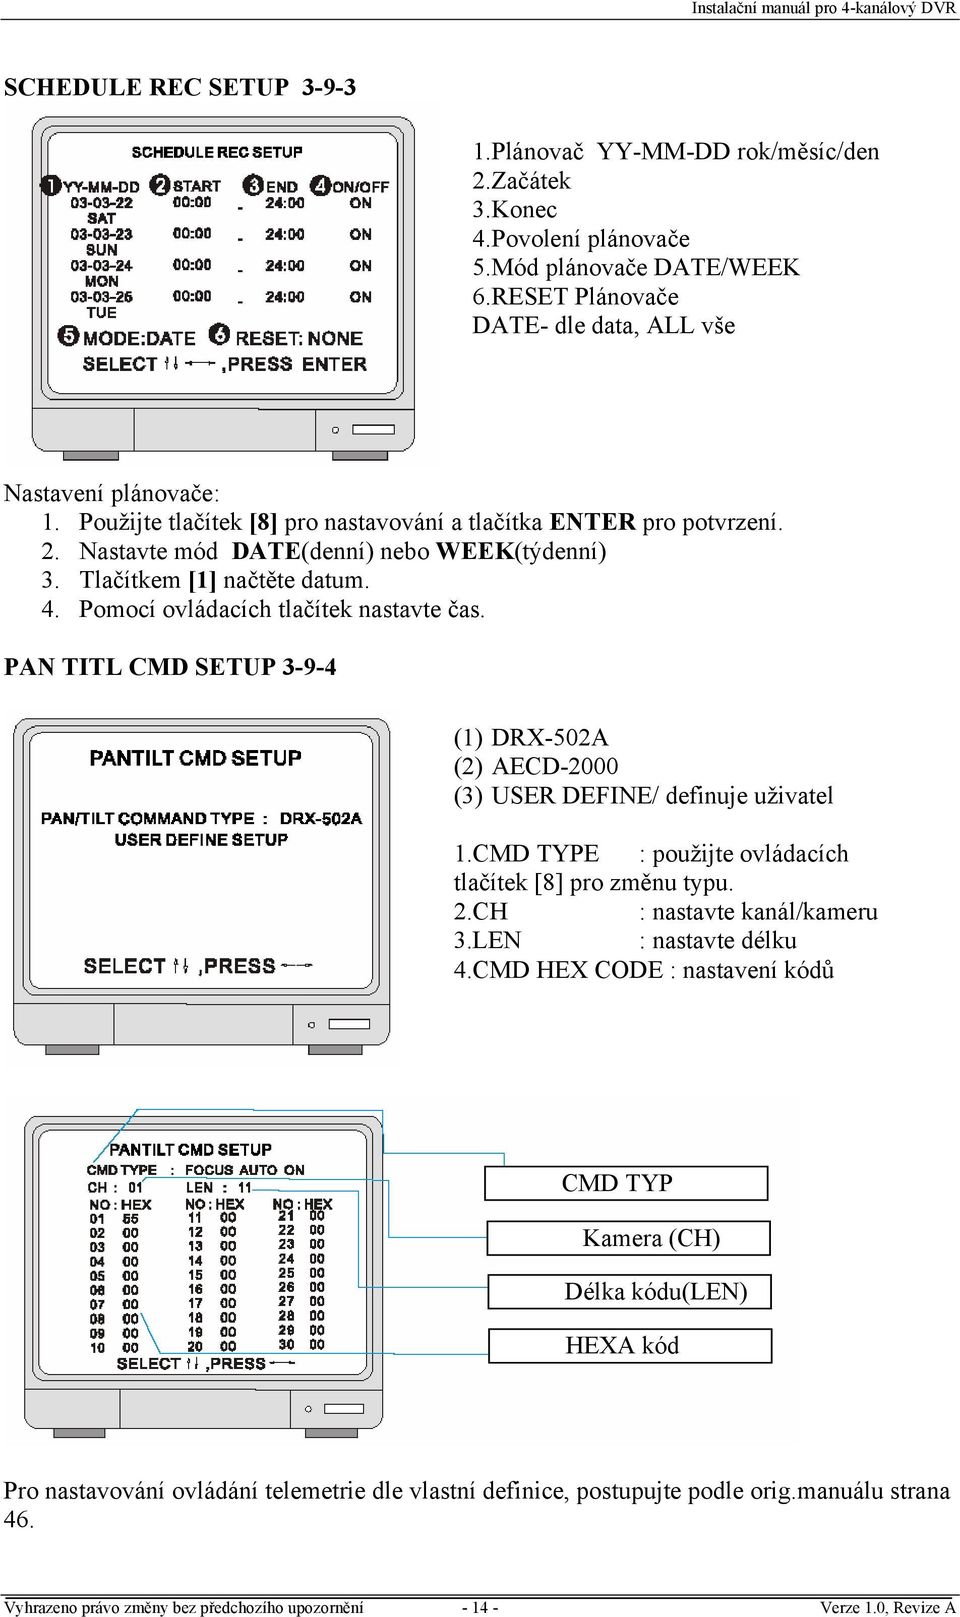 PAN TITL CMD SETUP 3-9-4 (1) DRX-502A (2) AECD-2000 (3) USER DEFINE/ definuje uživatel 1.CMD TYPE : použijte ovládacích tlačítek [8] pro změnu typu. 2.CH : nastavte kanál/kameru 3.